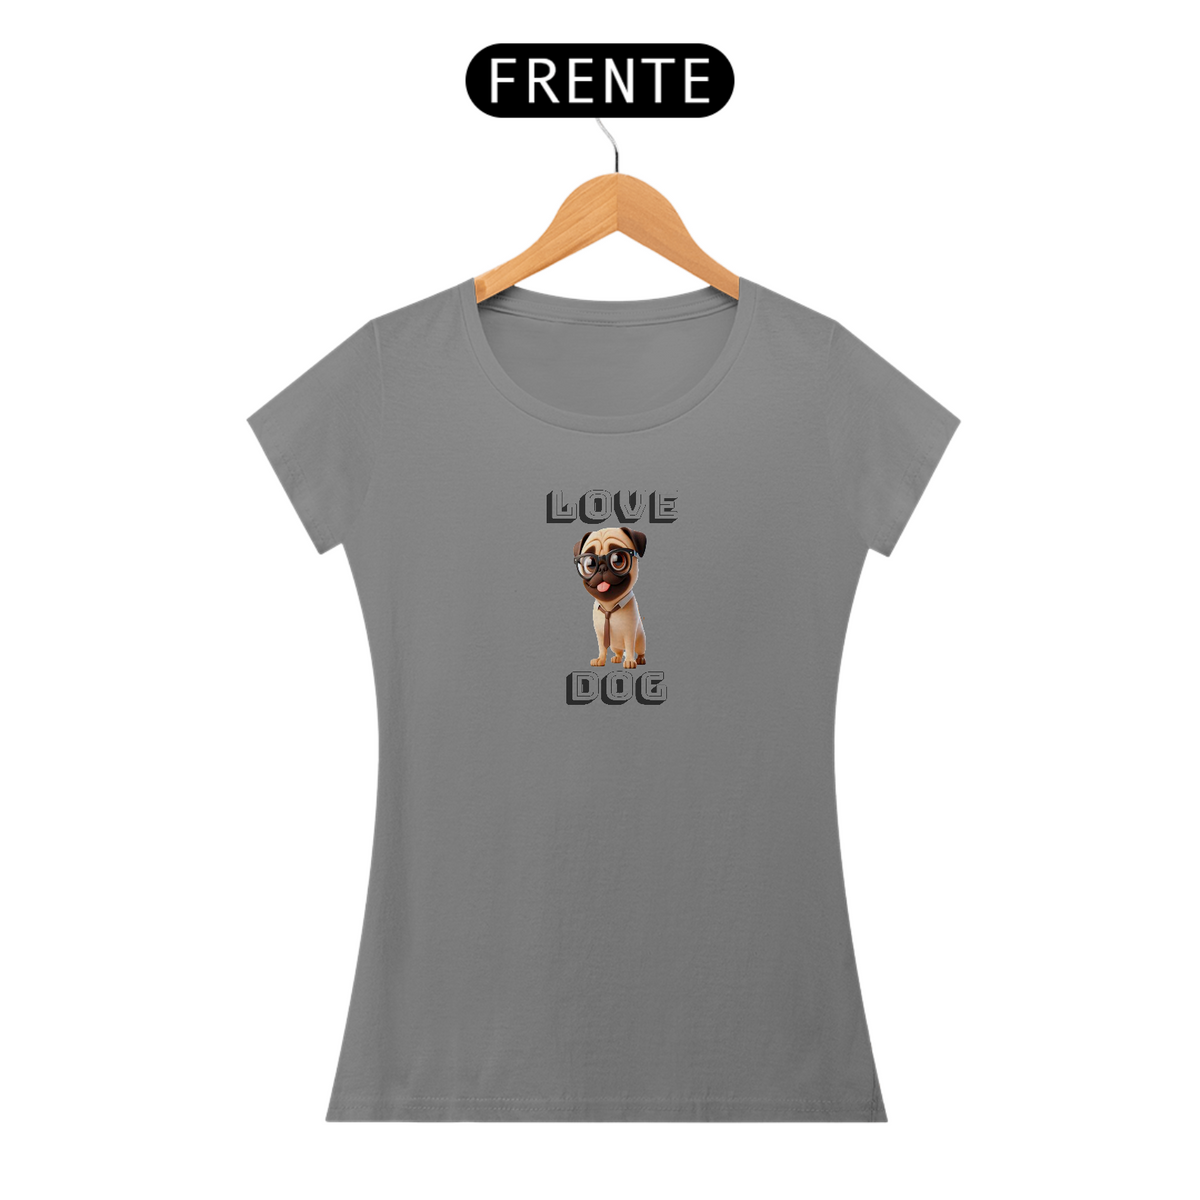 Nome do produto: Camiseta Baby Long Love Dog